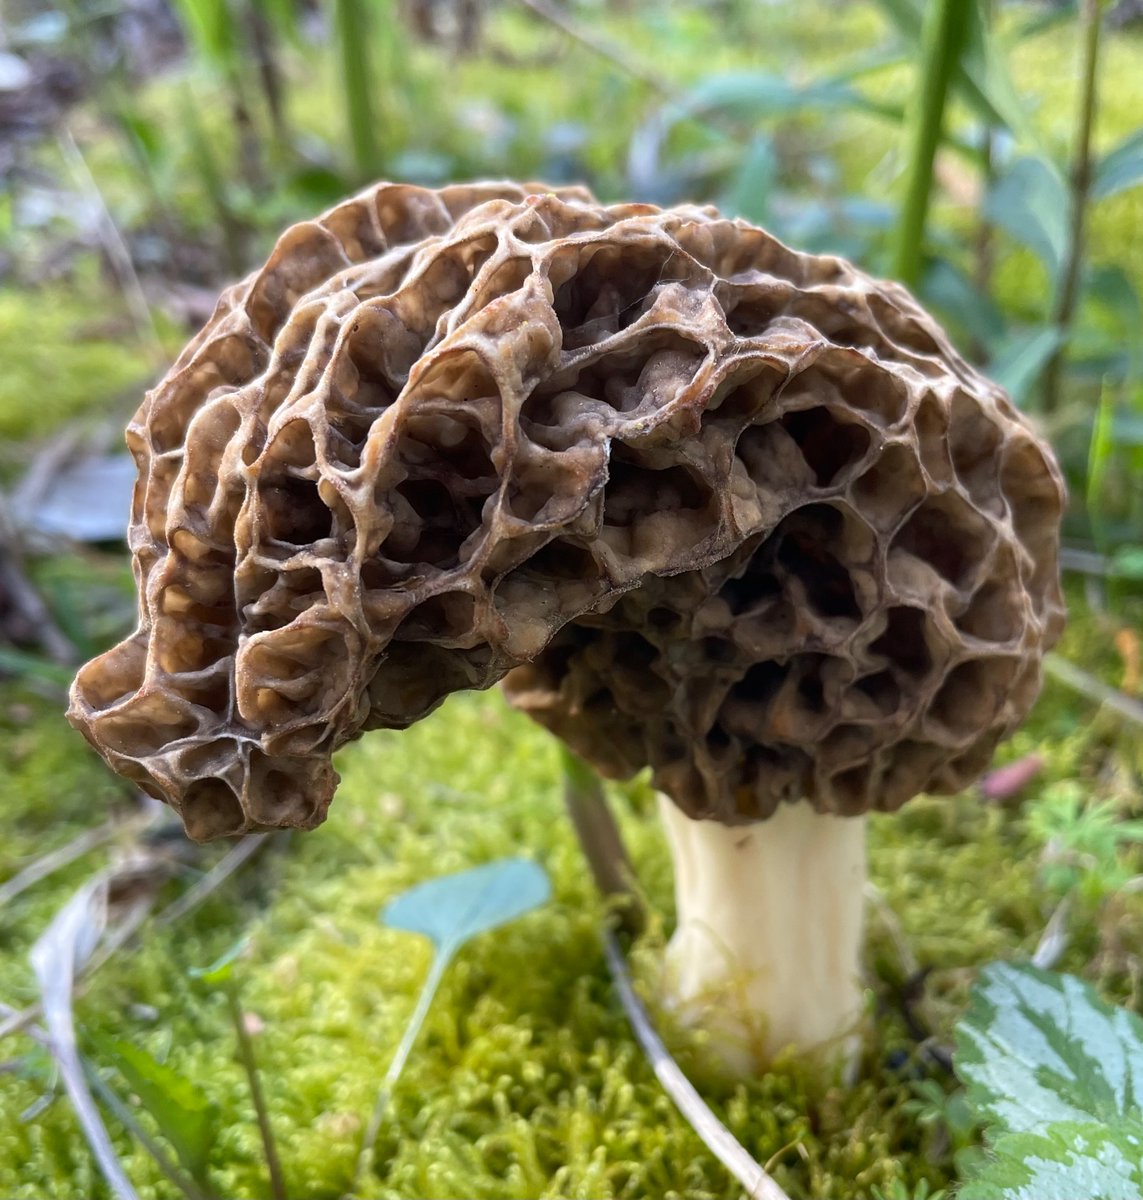 Morel mushroom popped up today.